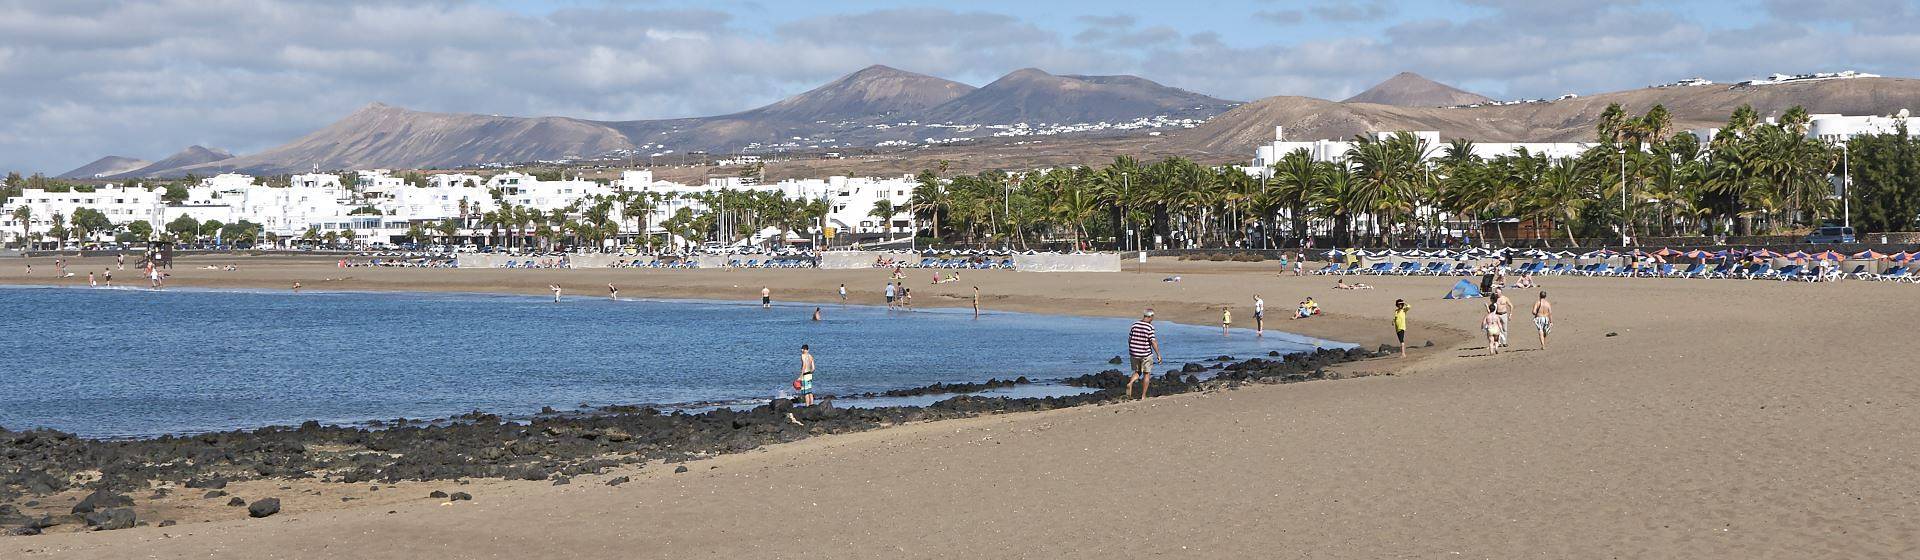 Holidays to Playa de los Pocillos Image